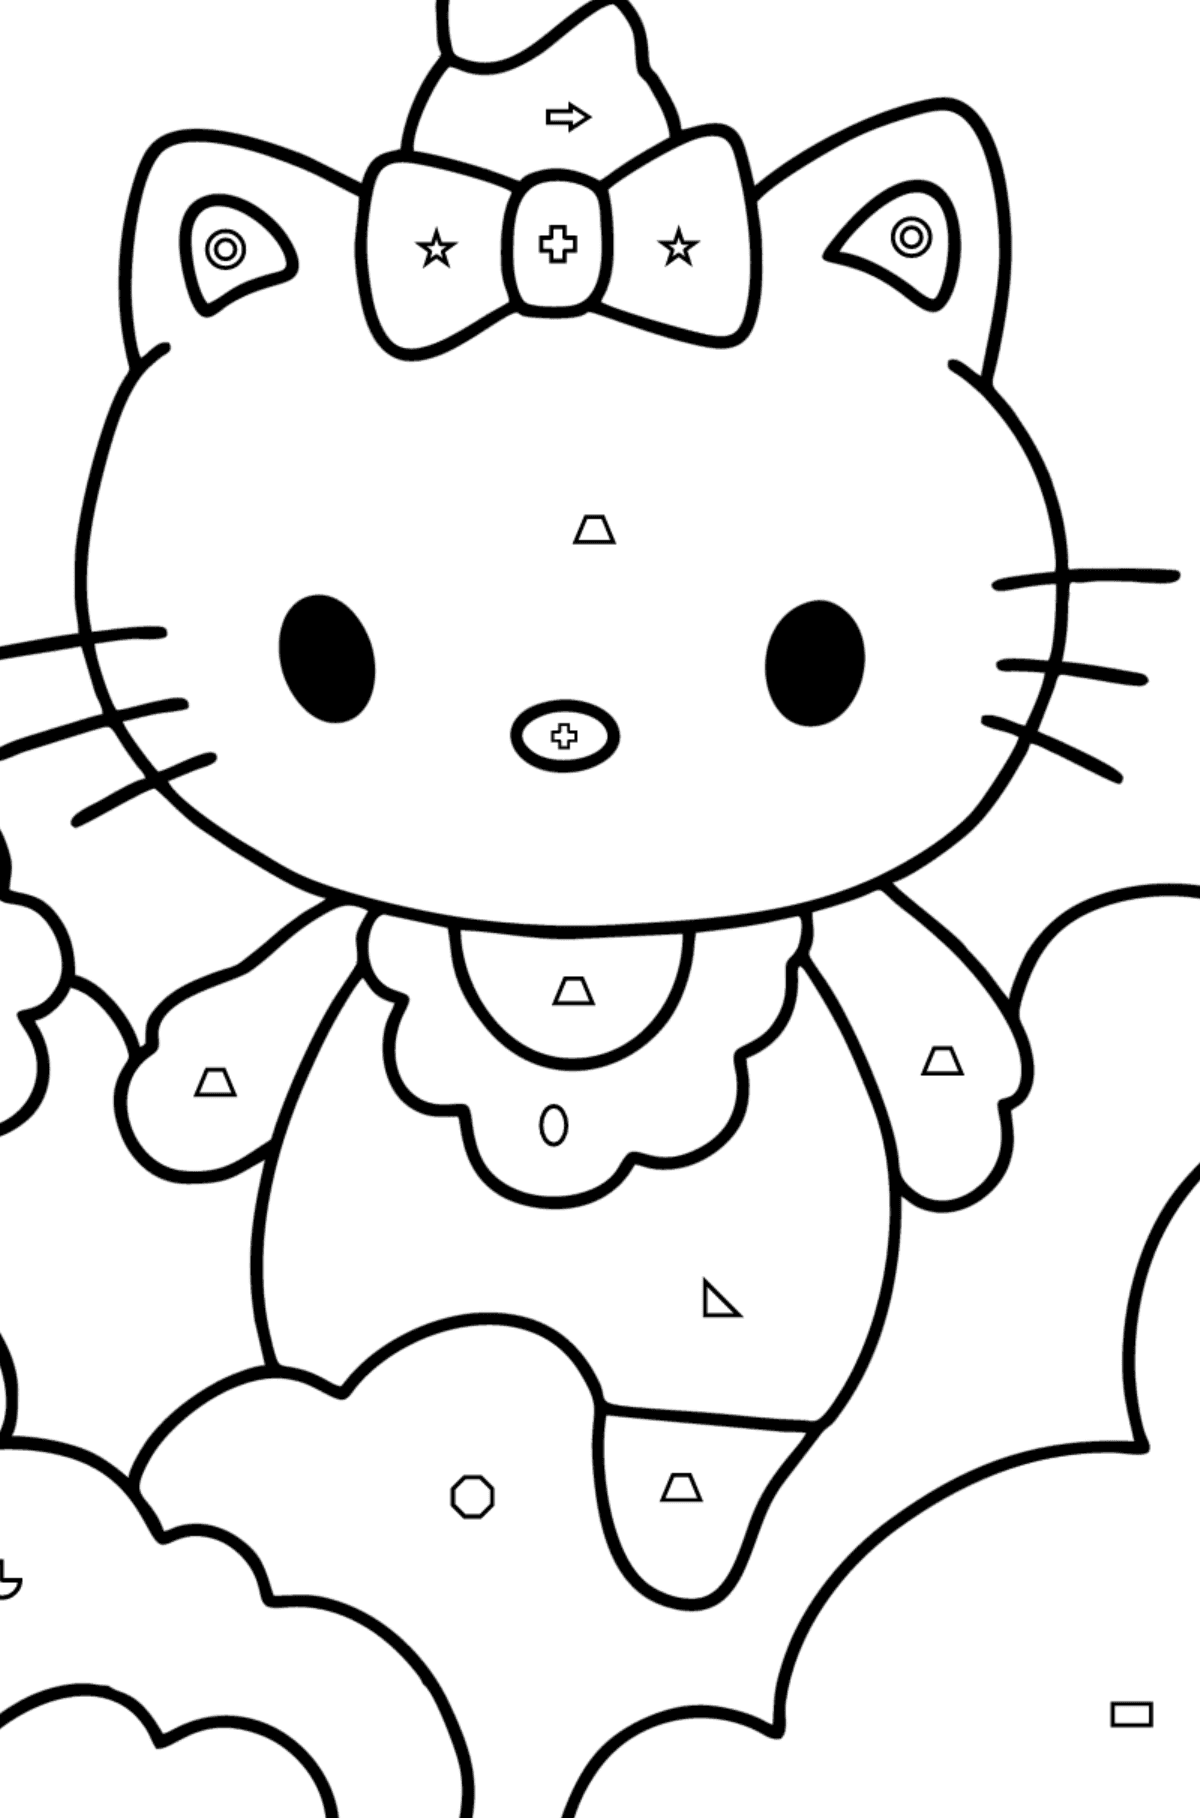 Boyama sayfası Hello Kitty tek boynuzlu at - Geometrik Şekillerle Boyama çocuklar için